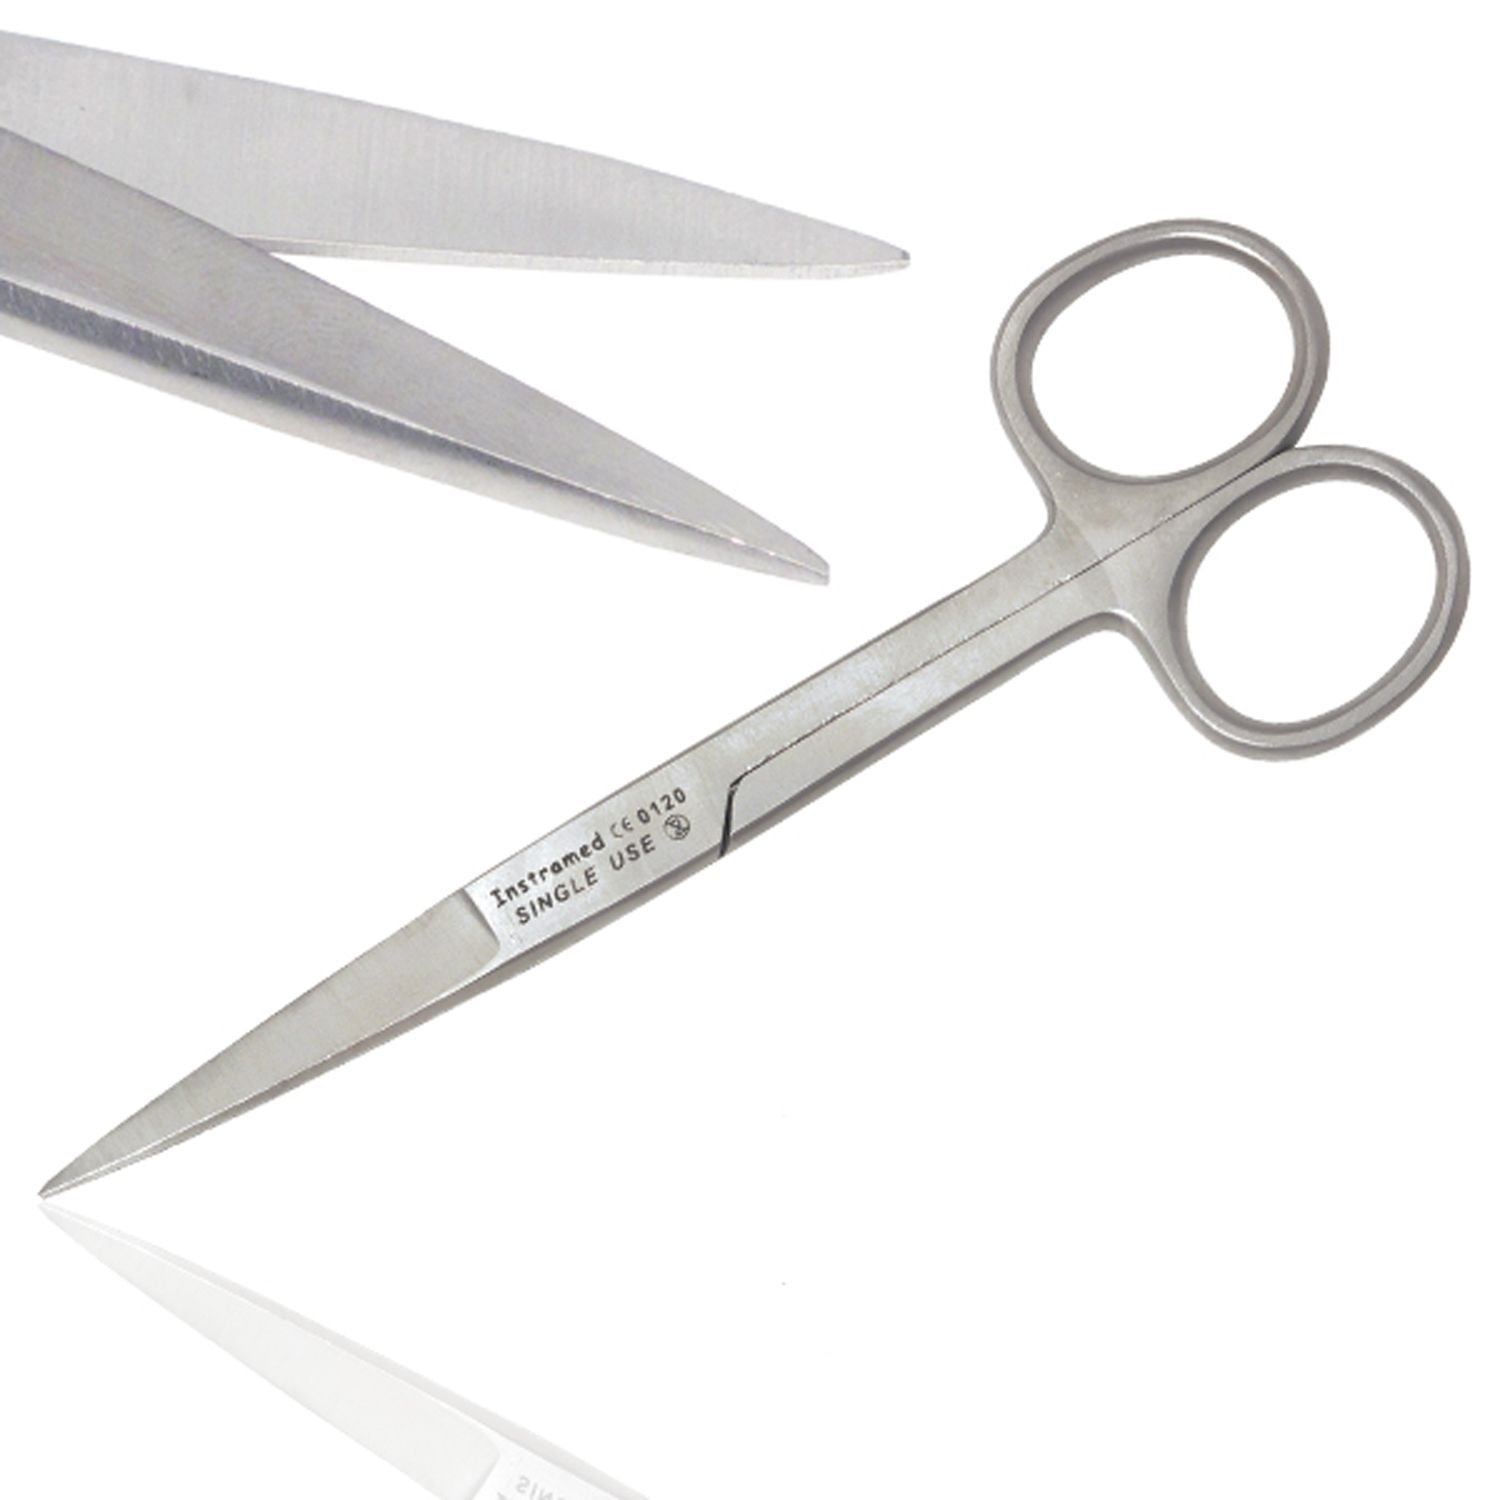 Instramed Kilner Scissors | Straight | 11.5cm | Single